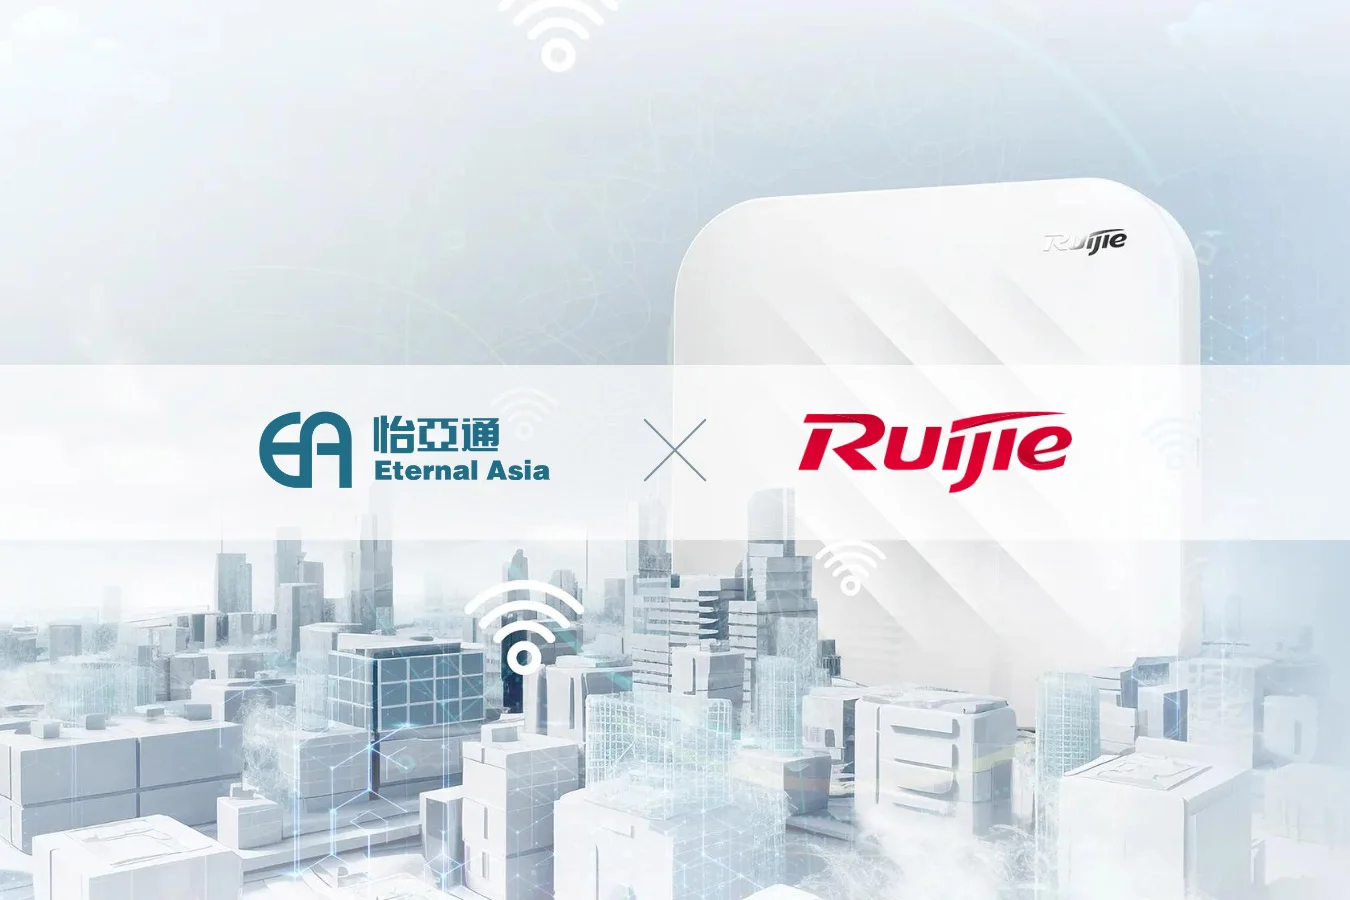 eavn trở thành nhà phân phối chính thức của ruijie tại việt nam